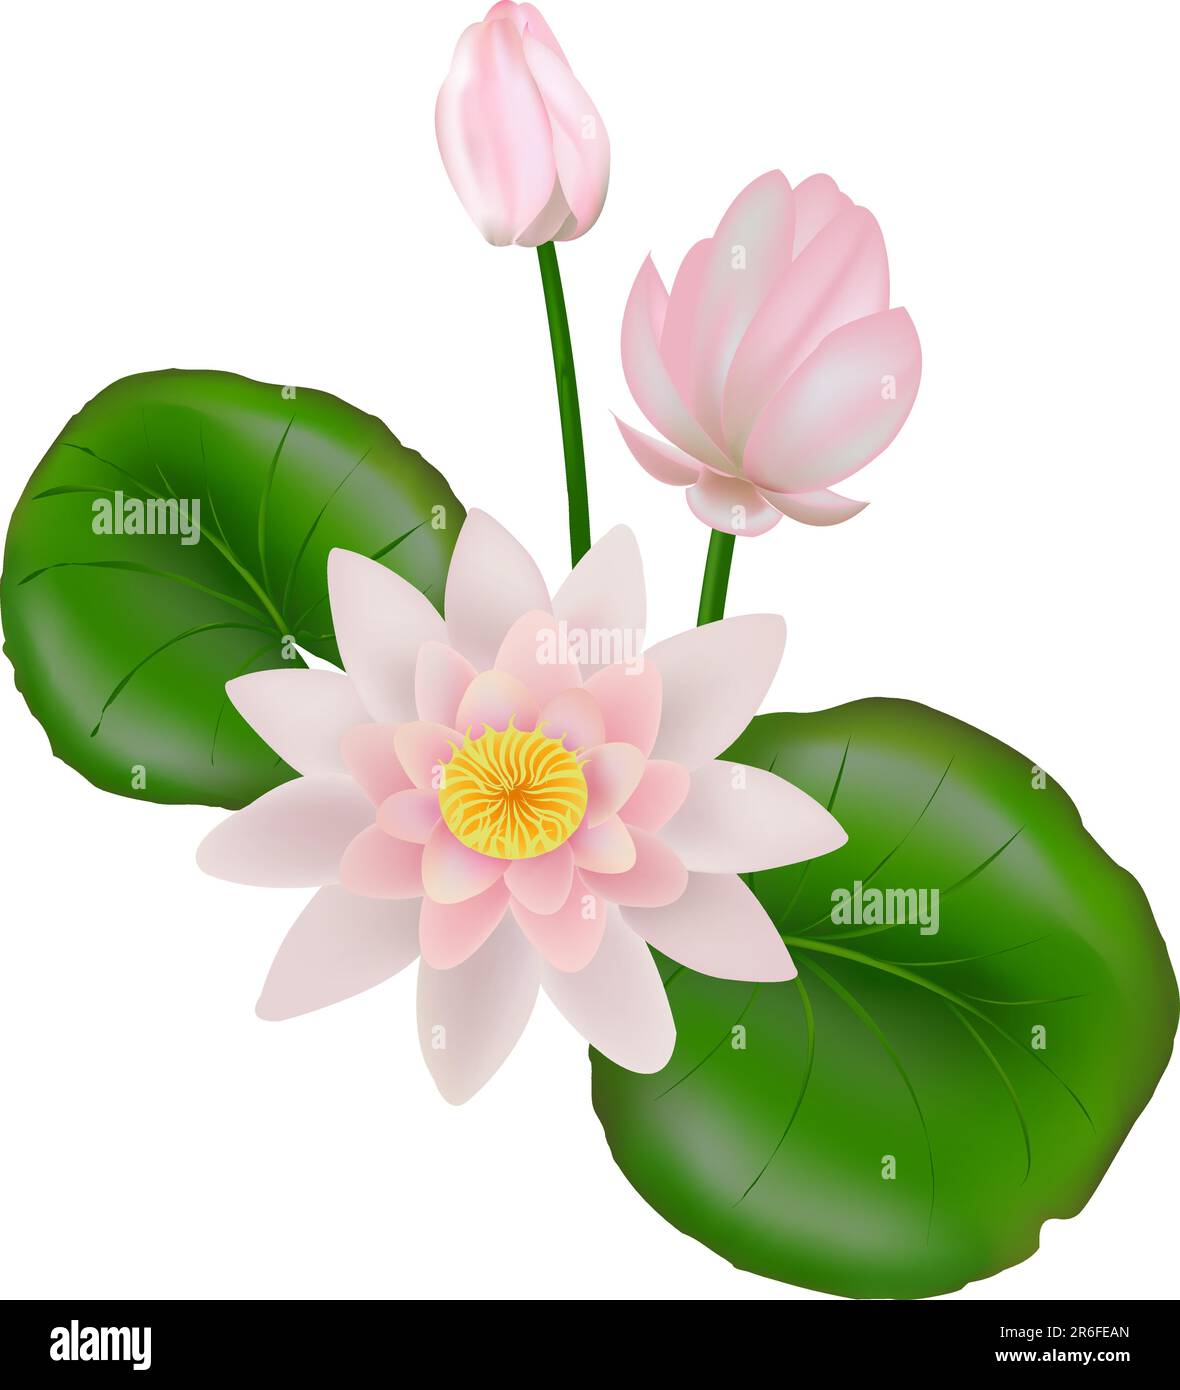 Rosa-weiße Lotusblume oder Wasserlilie schwimmend auf Wasser, isoliert auf Weiß Stock Vektor